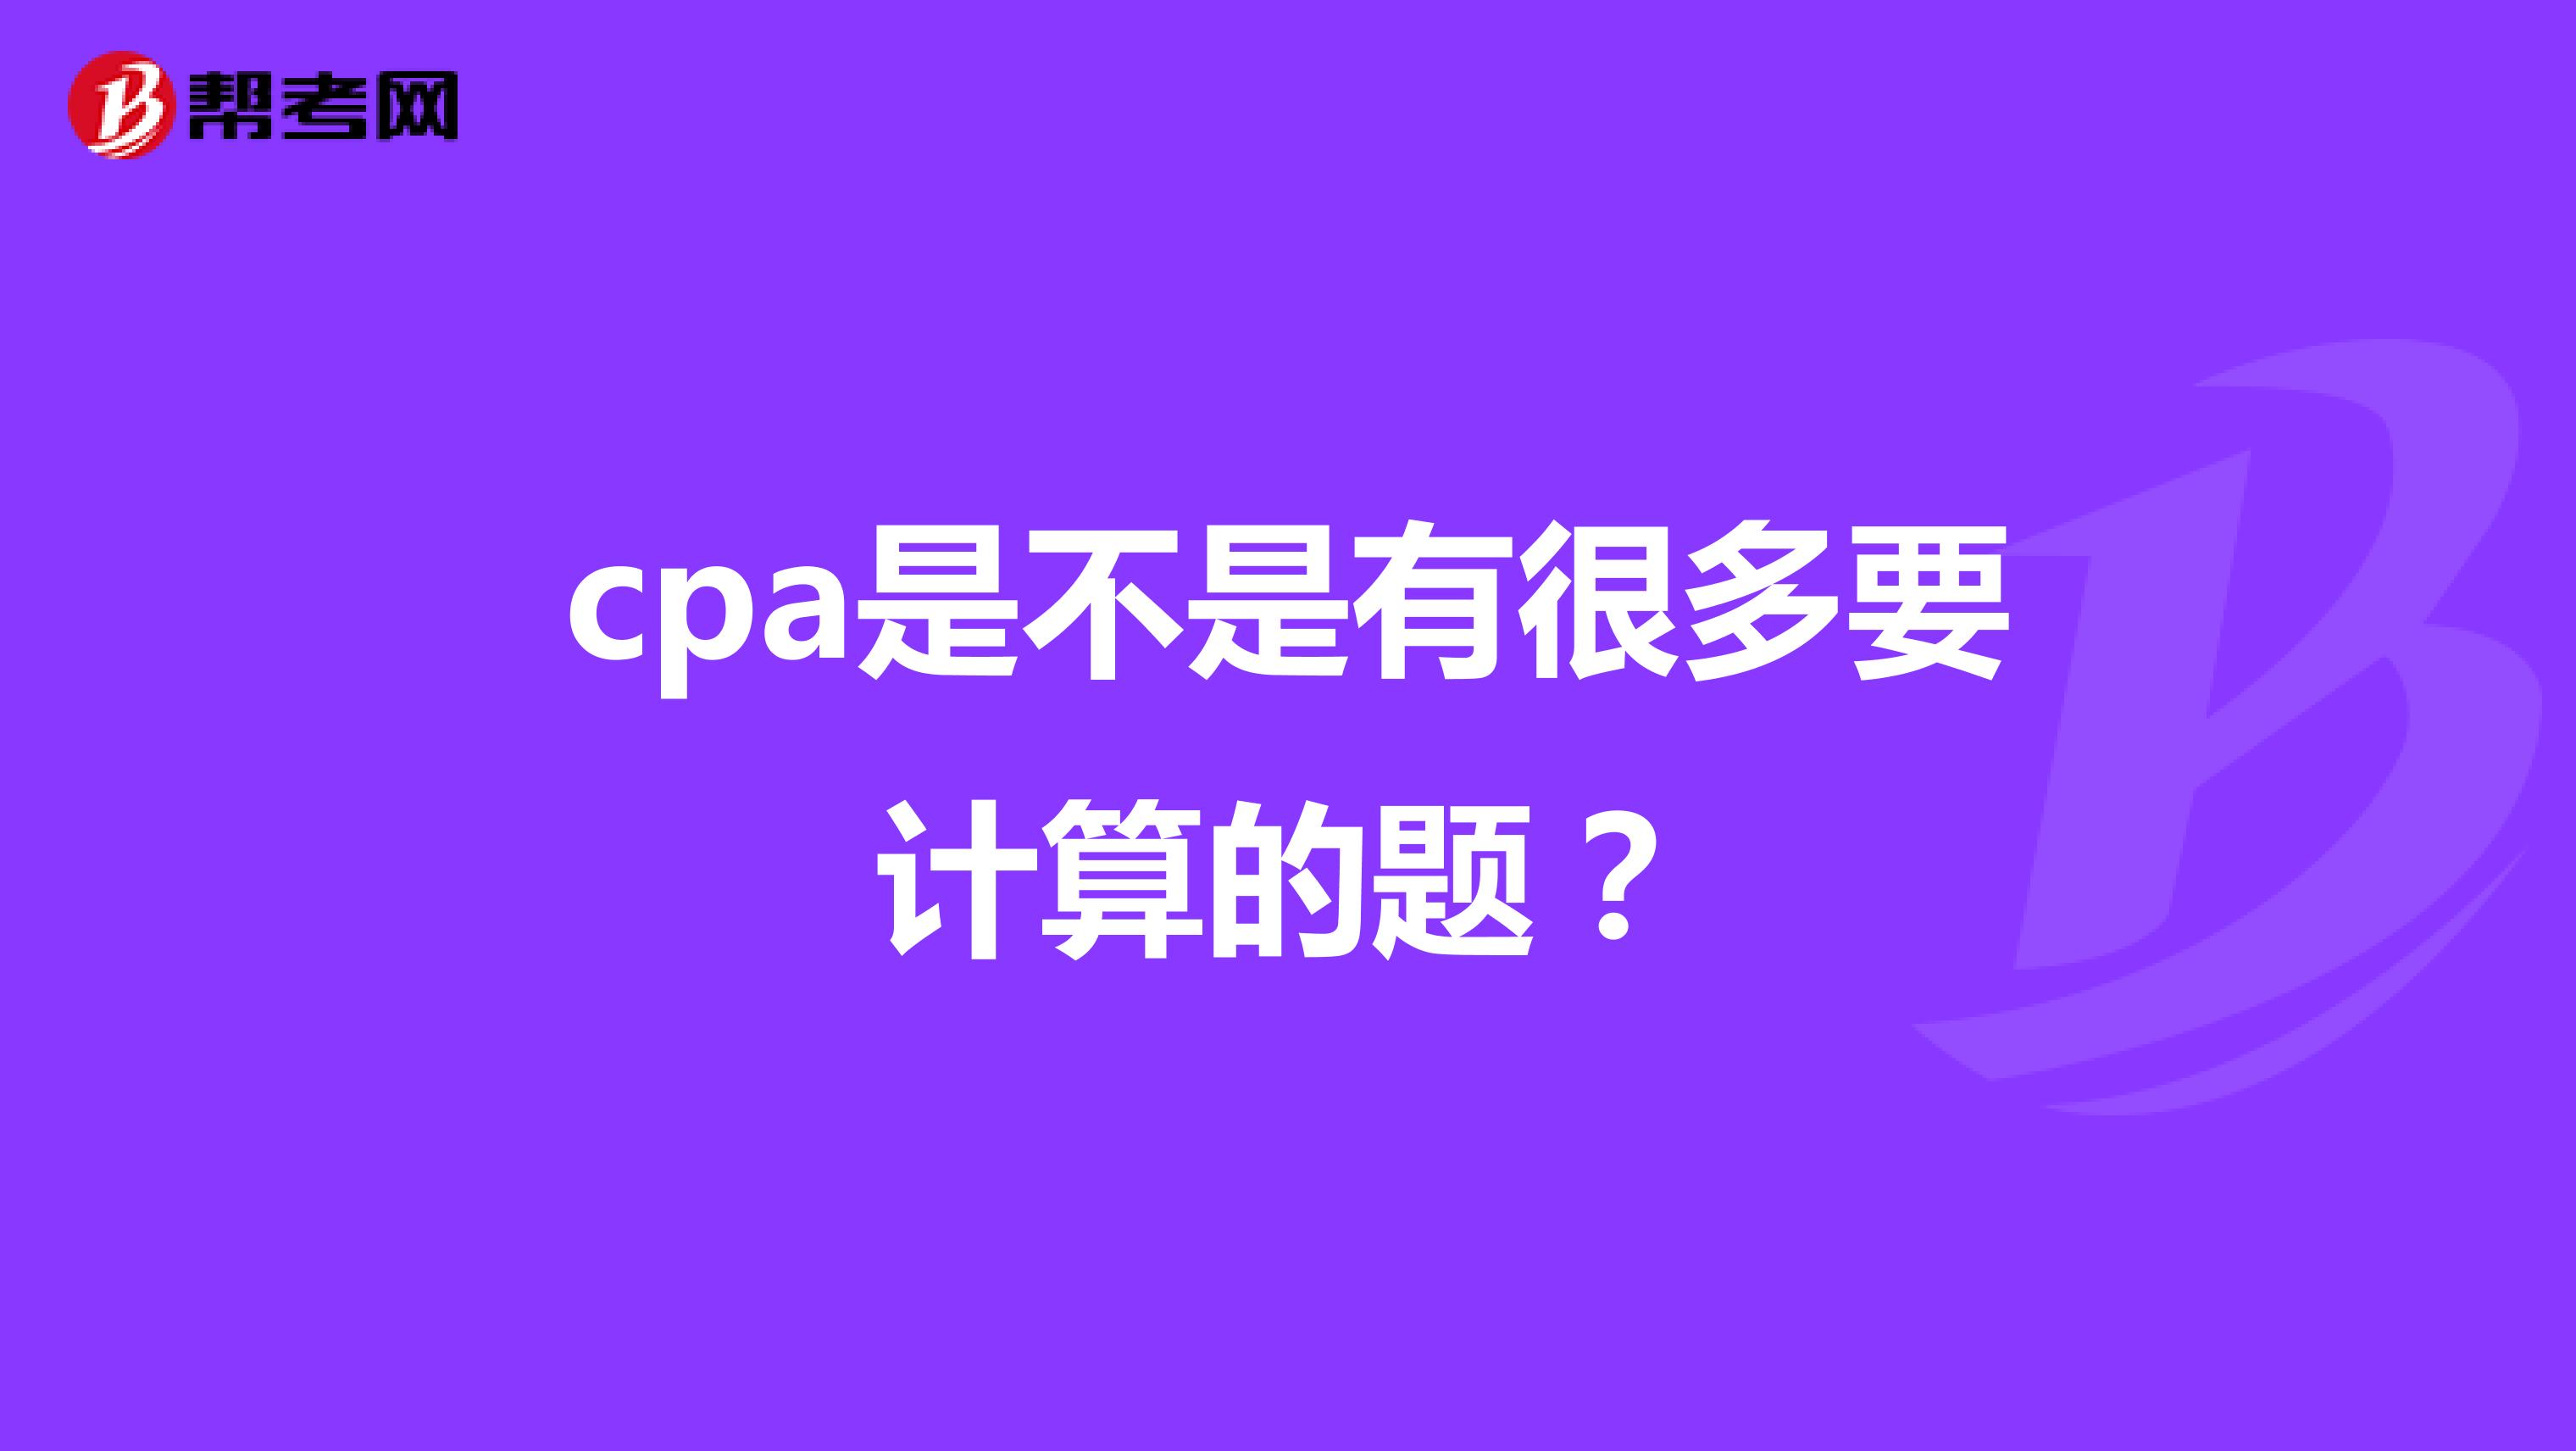 cpa是不是有很多要计算的题？